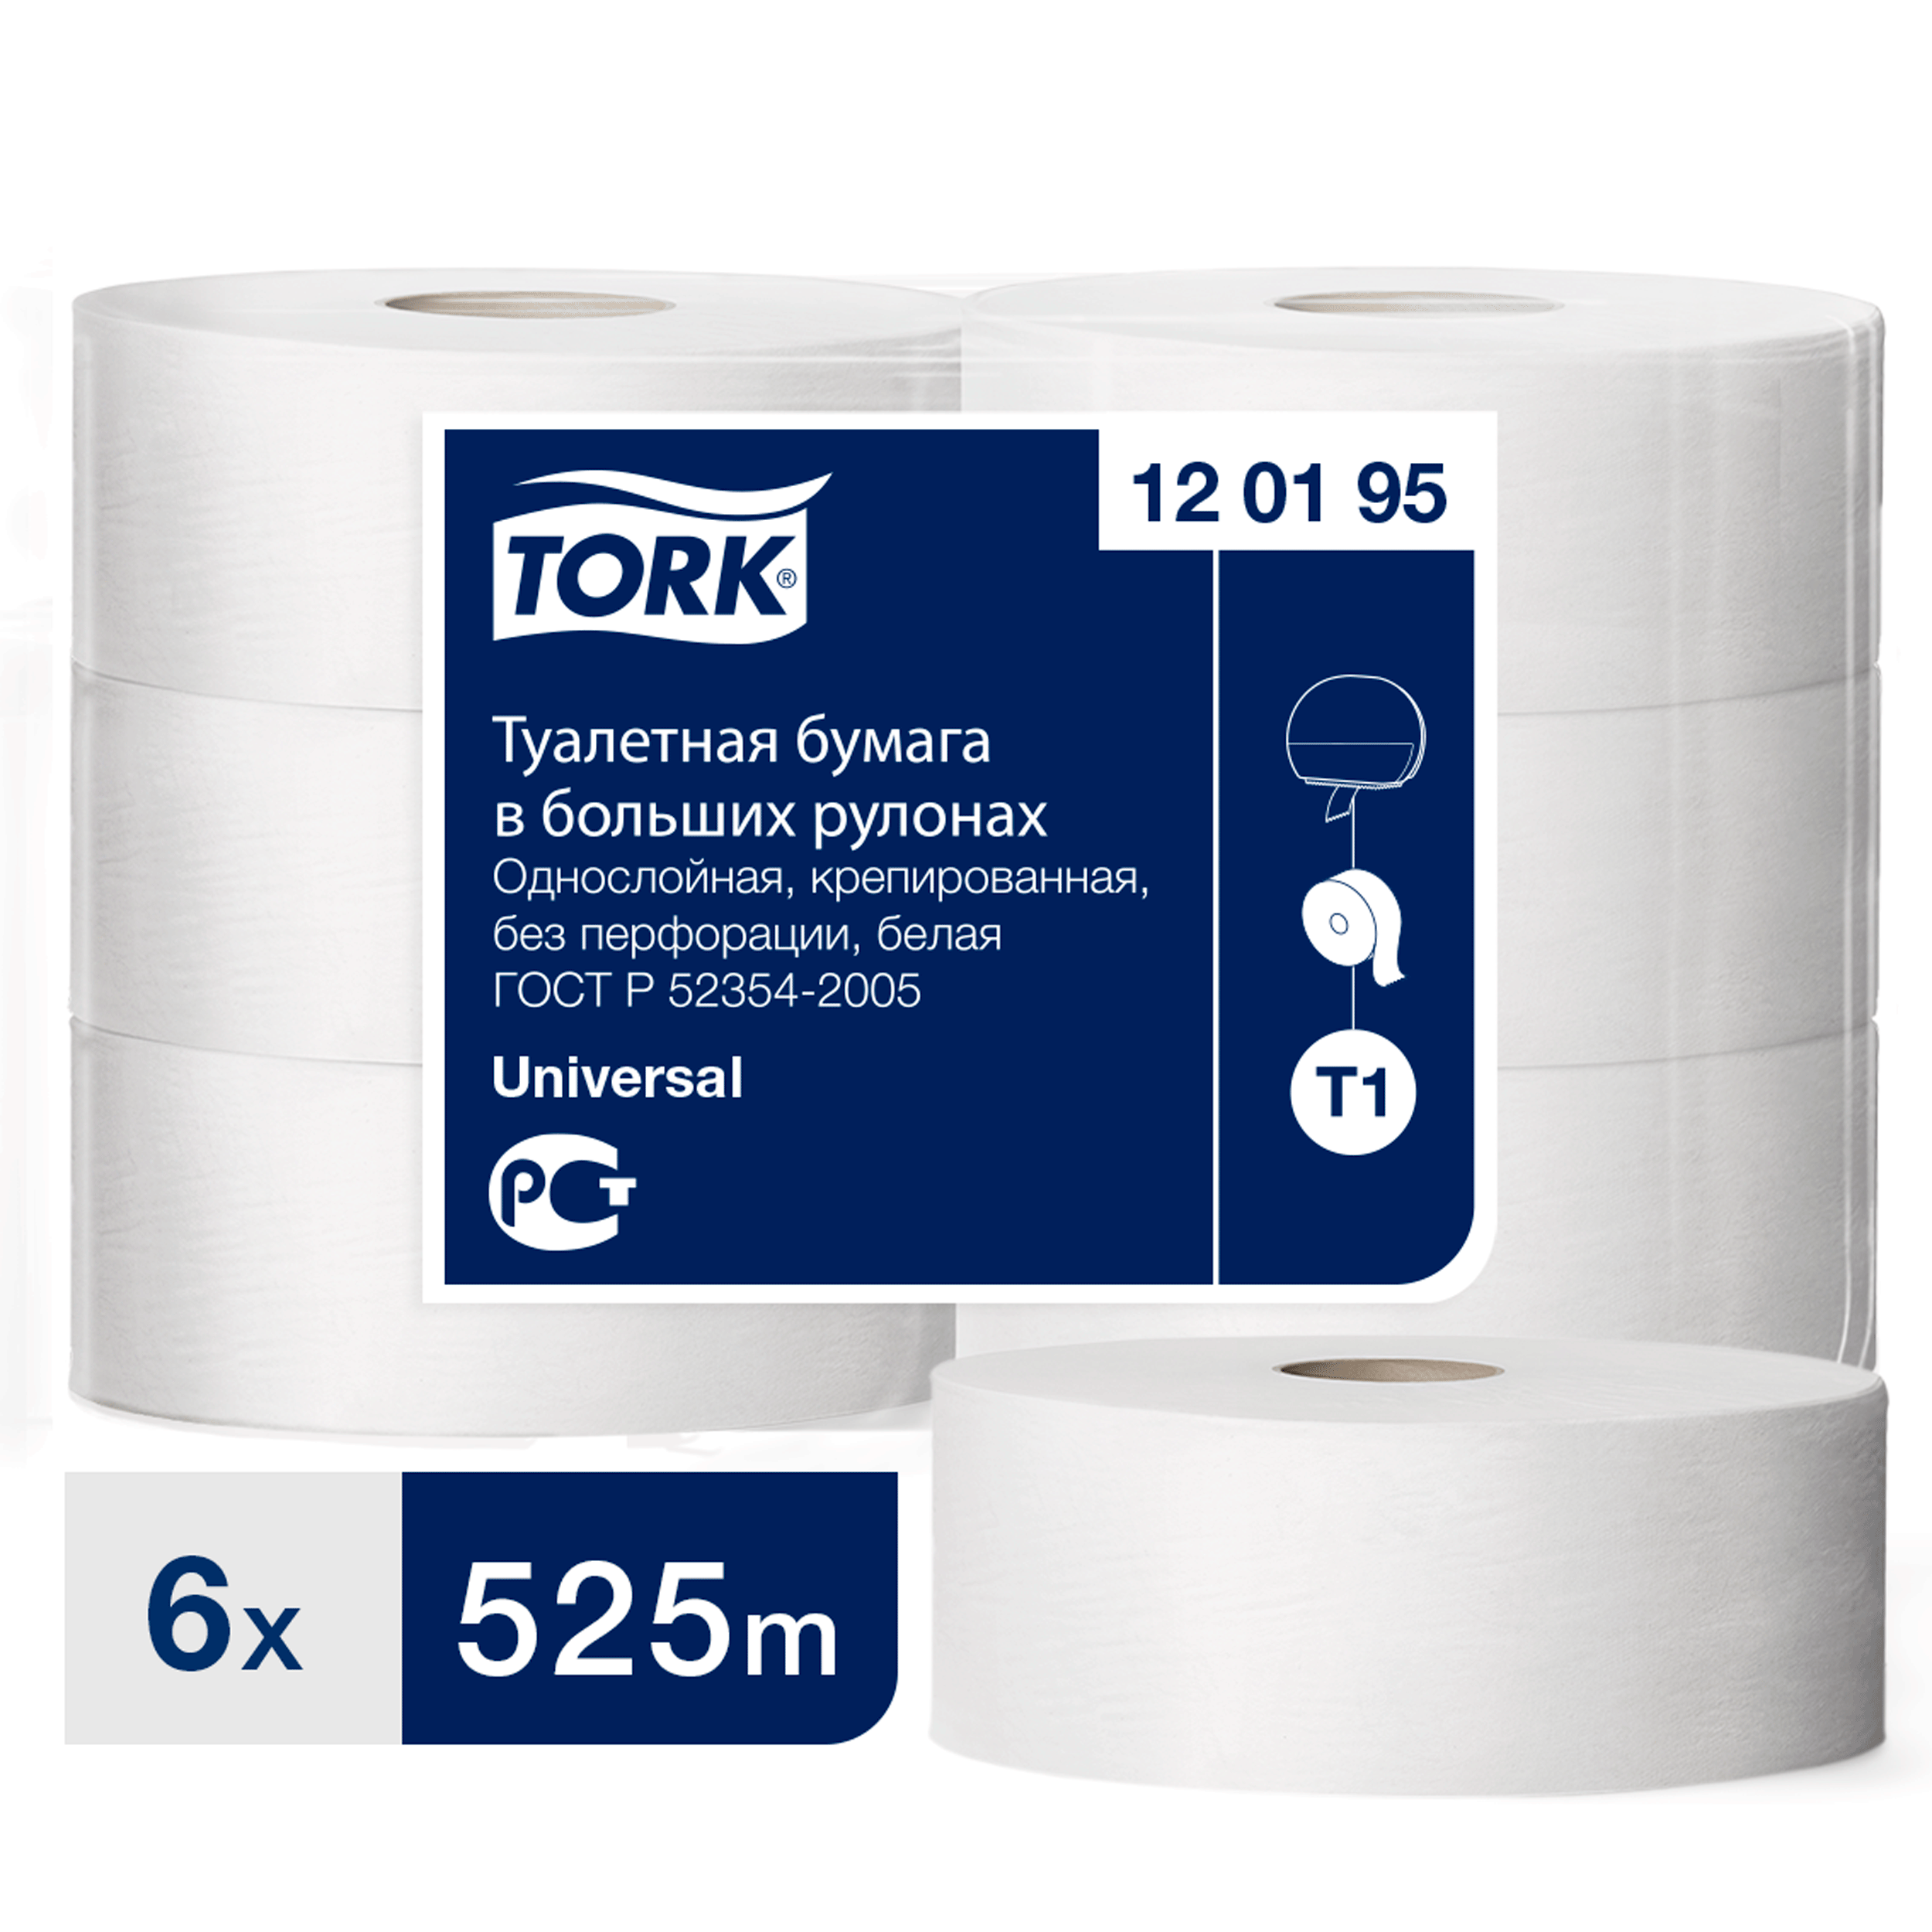 Туалетная бумага Tork в больших рулонах, T1, 1 слой, 525 м, ширина 9,5см, 6 шт туалетная бумага снежок 57 метров со втулкой 1 слой 24 шт